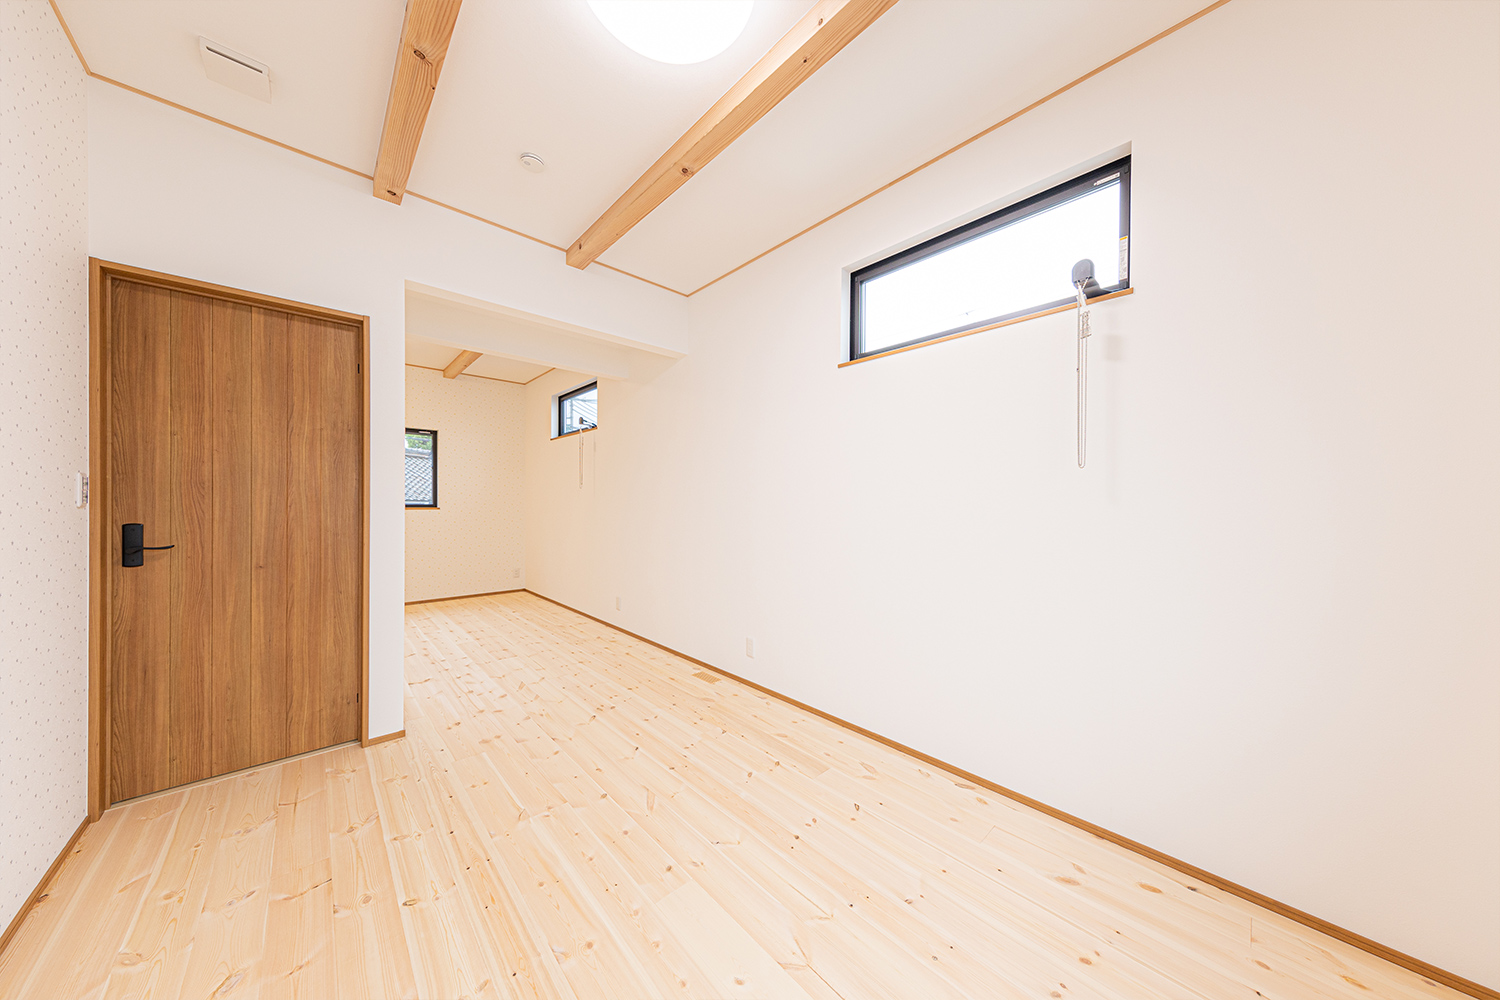 和歌山市 新築 木の家 子供部屋